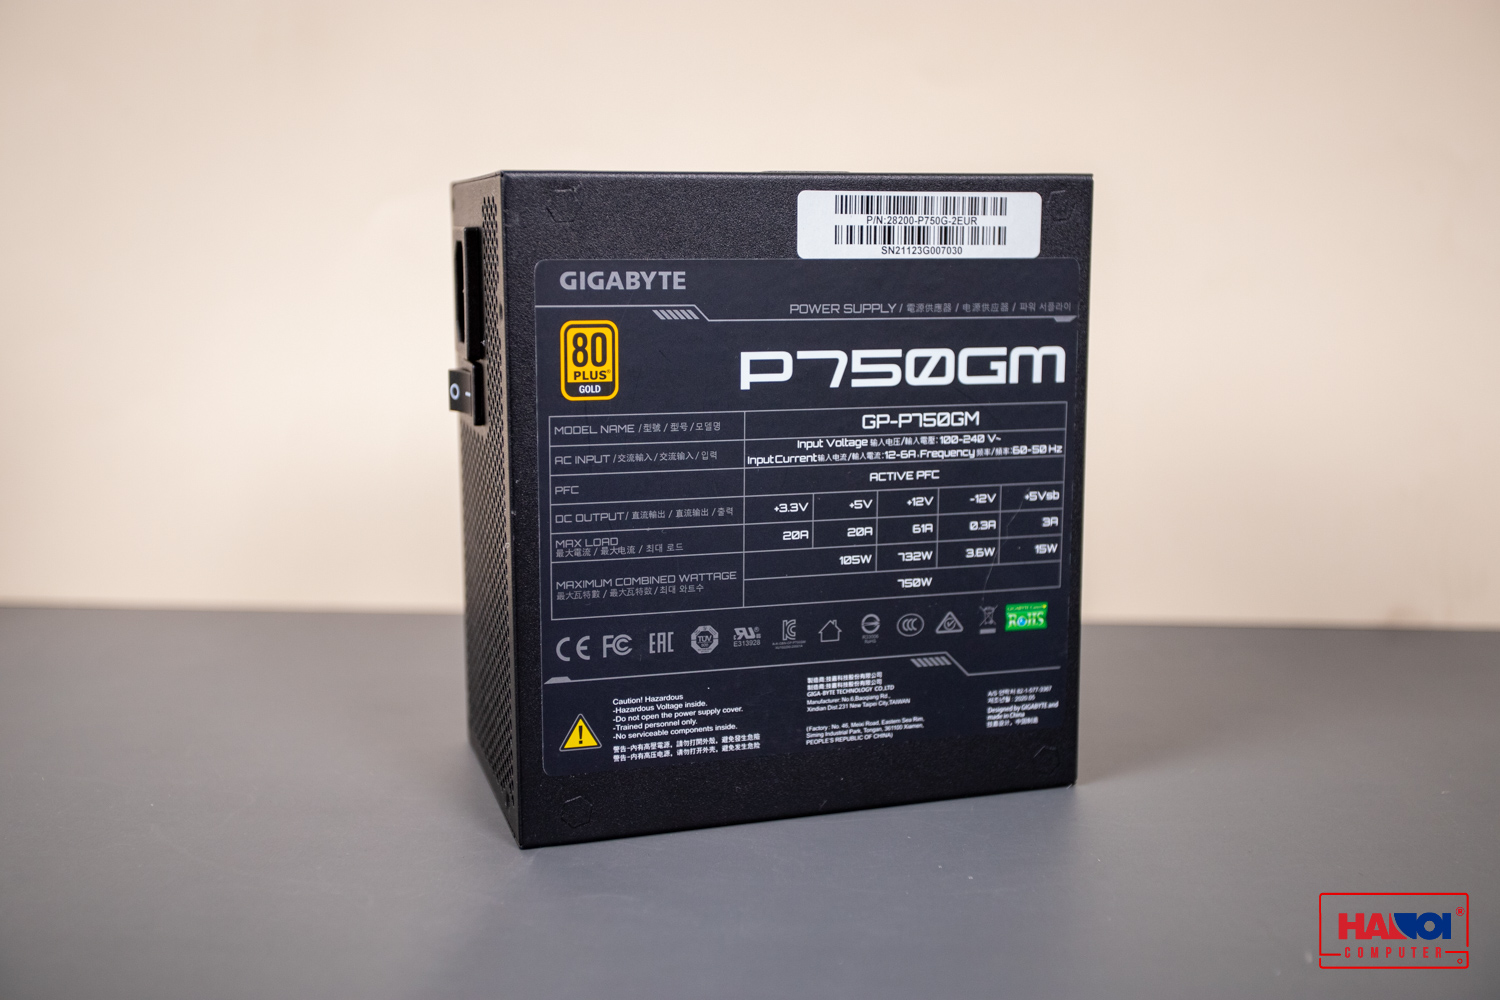 Nguồn Gigabyte GP- P750GM 750W (80 Plus Gold/Full Modular/Màu Đen) giới thiệu 2